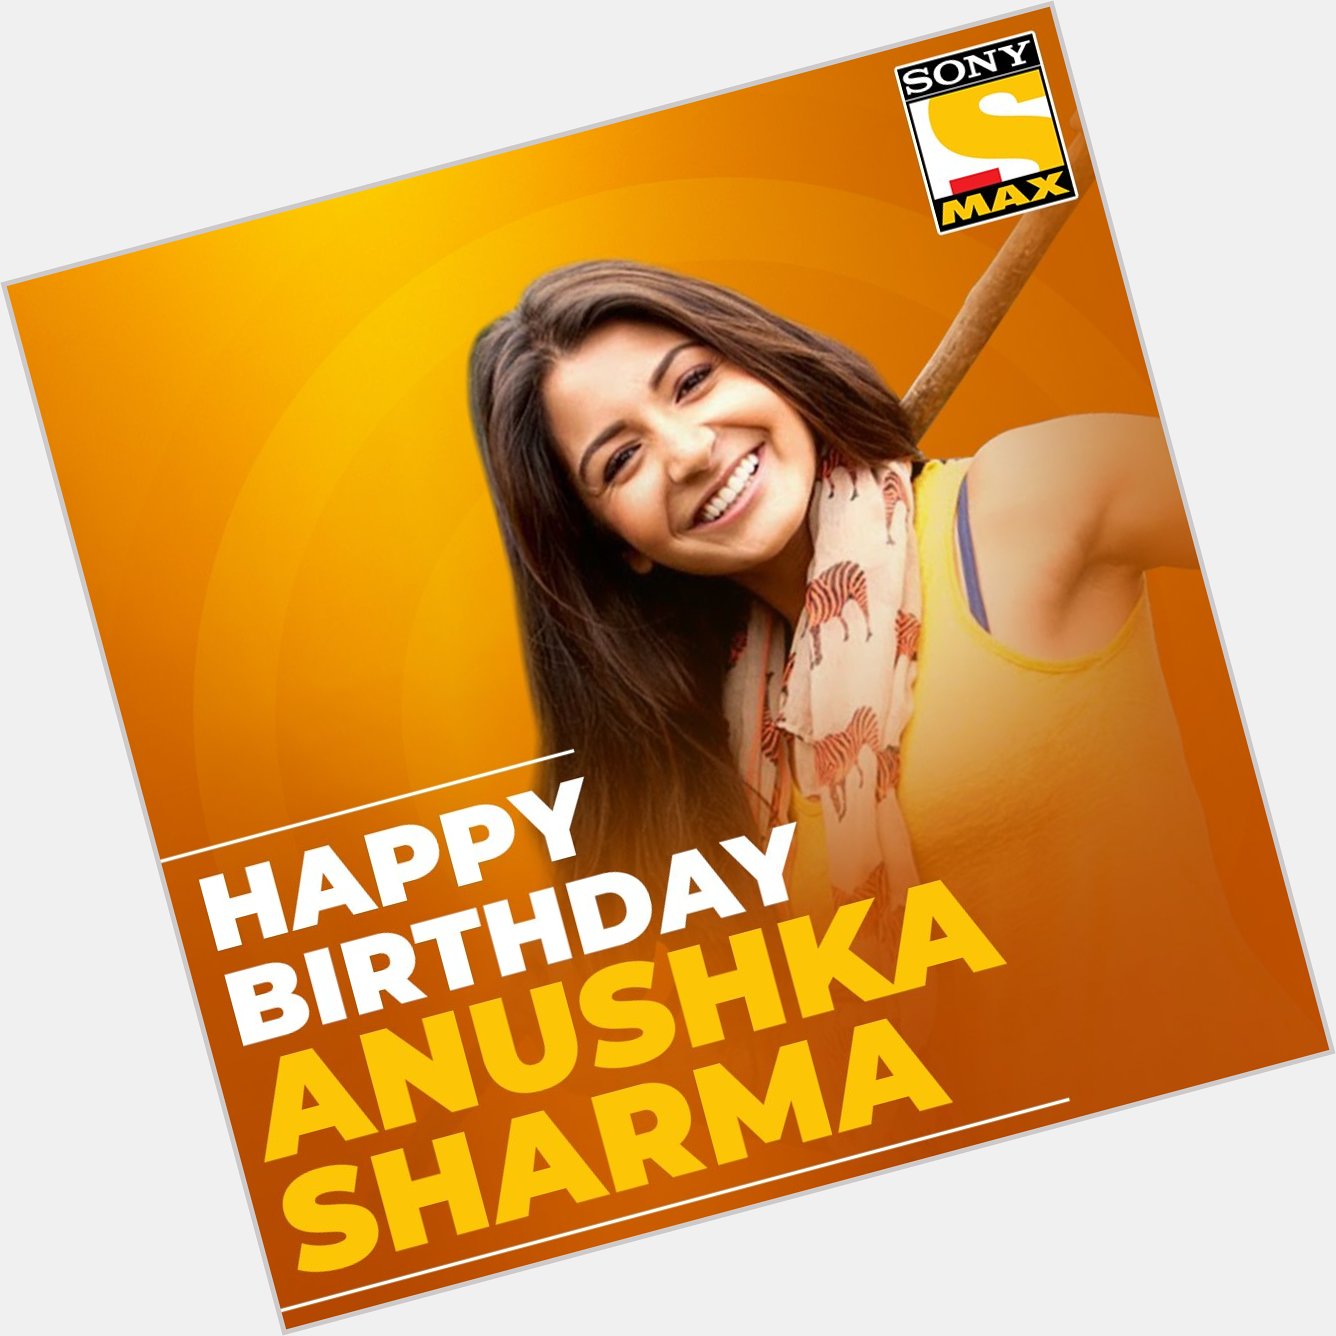 Sony MAX wishes Anushka Sharma a very happy birthday.  